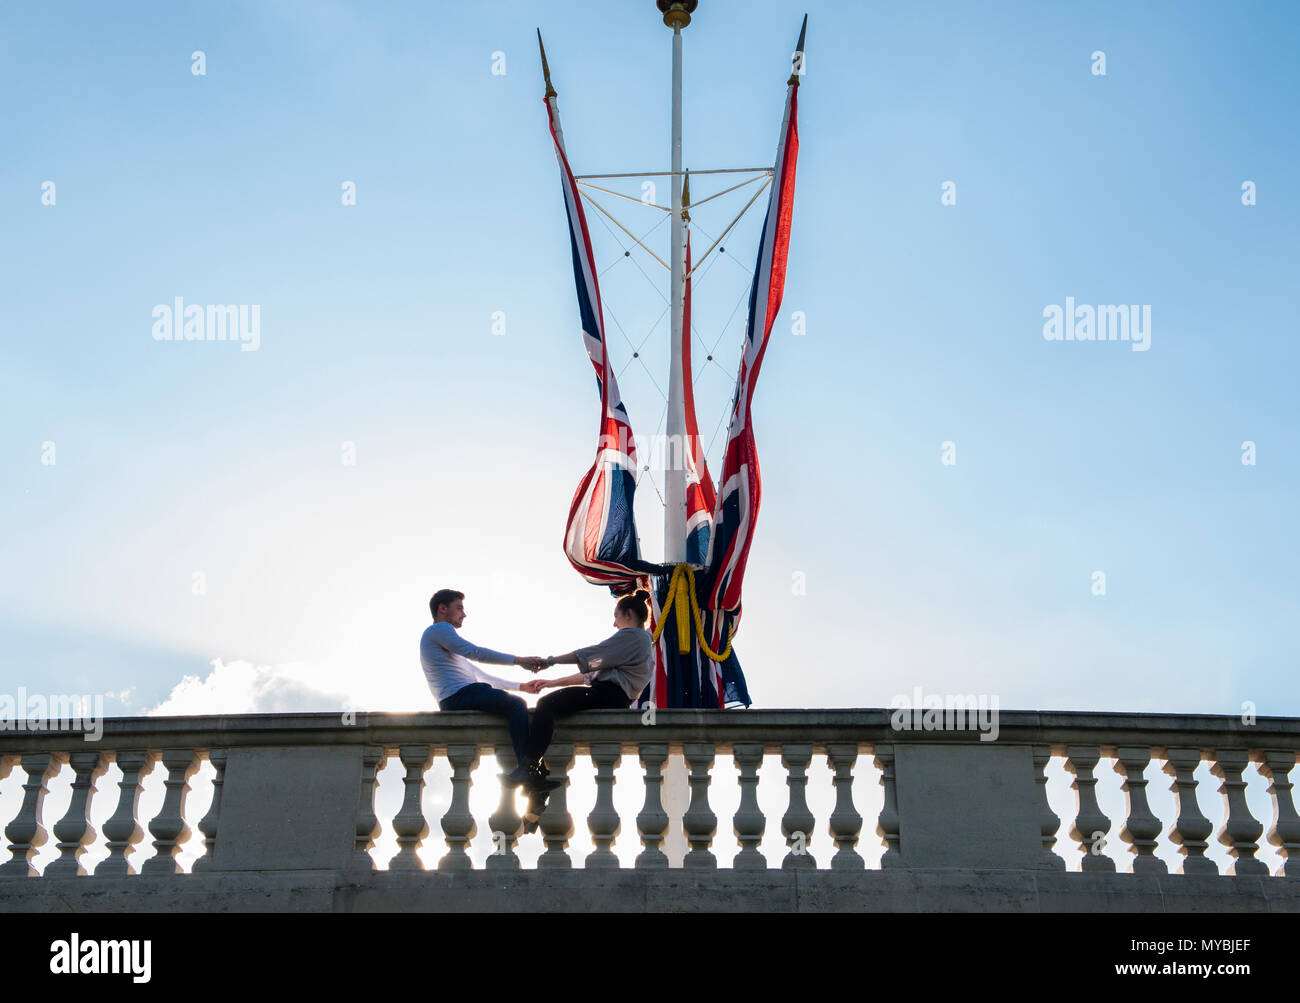 Junges Paar sitzt auf Wand, Hände halten, neben britischen Flaggen in St James's Park, London, England, Großbritannien Stockfoto